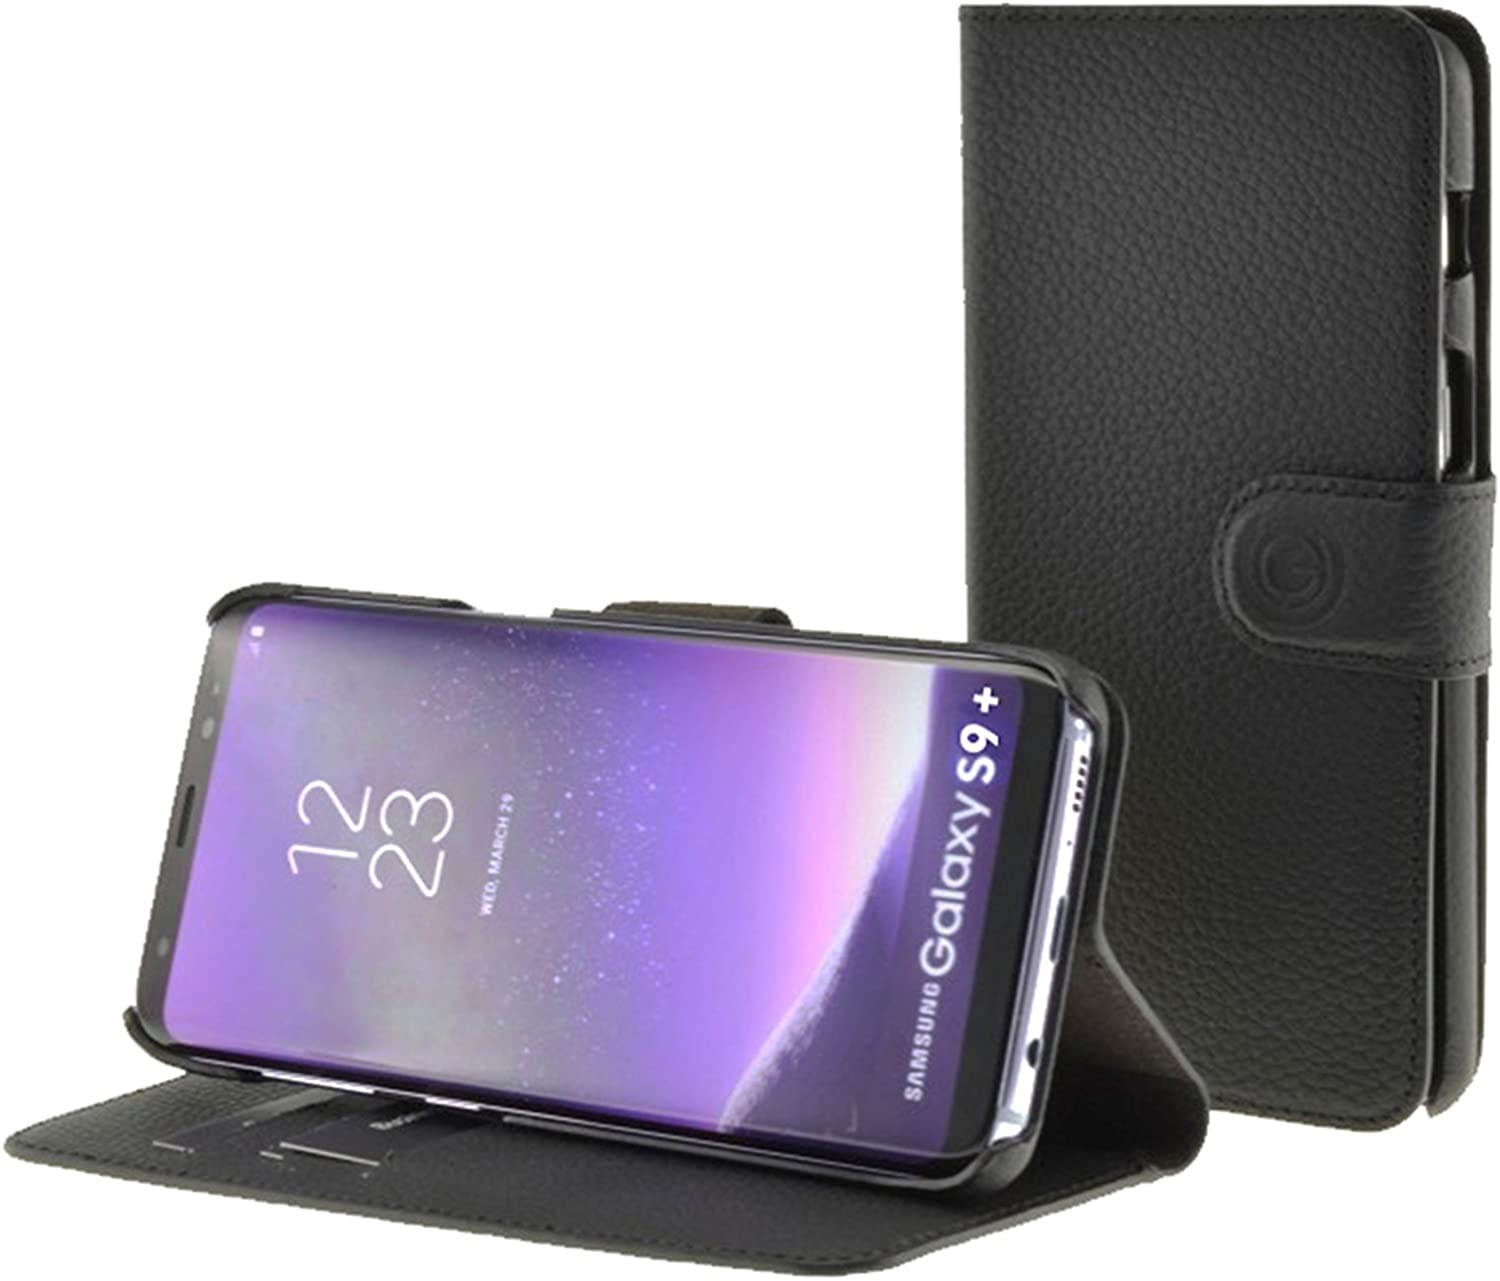 Mike Galeli 2in1 Echtleder Handmade Wallet für Samsung G965F Galaxy S9+ - Schwarz